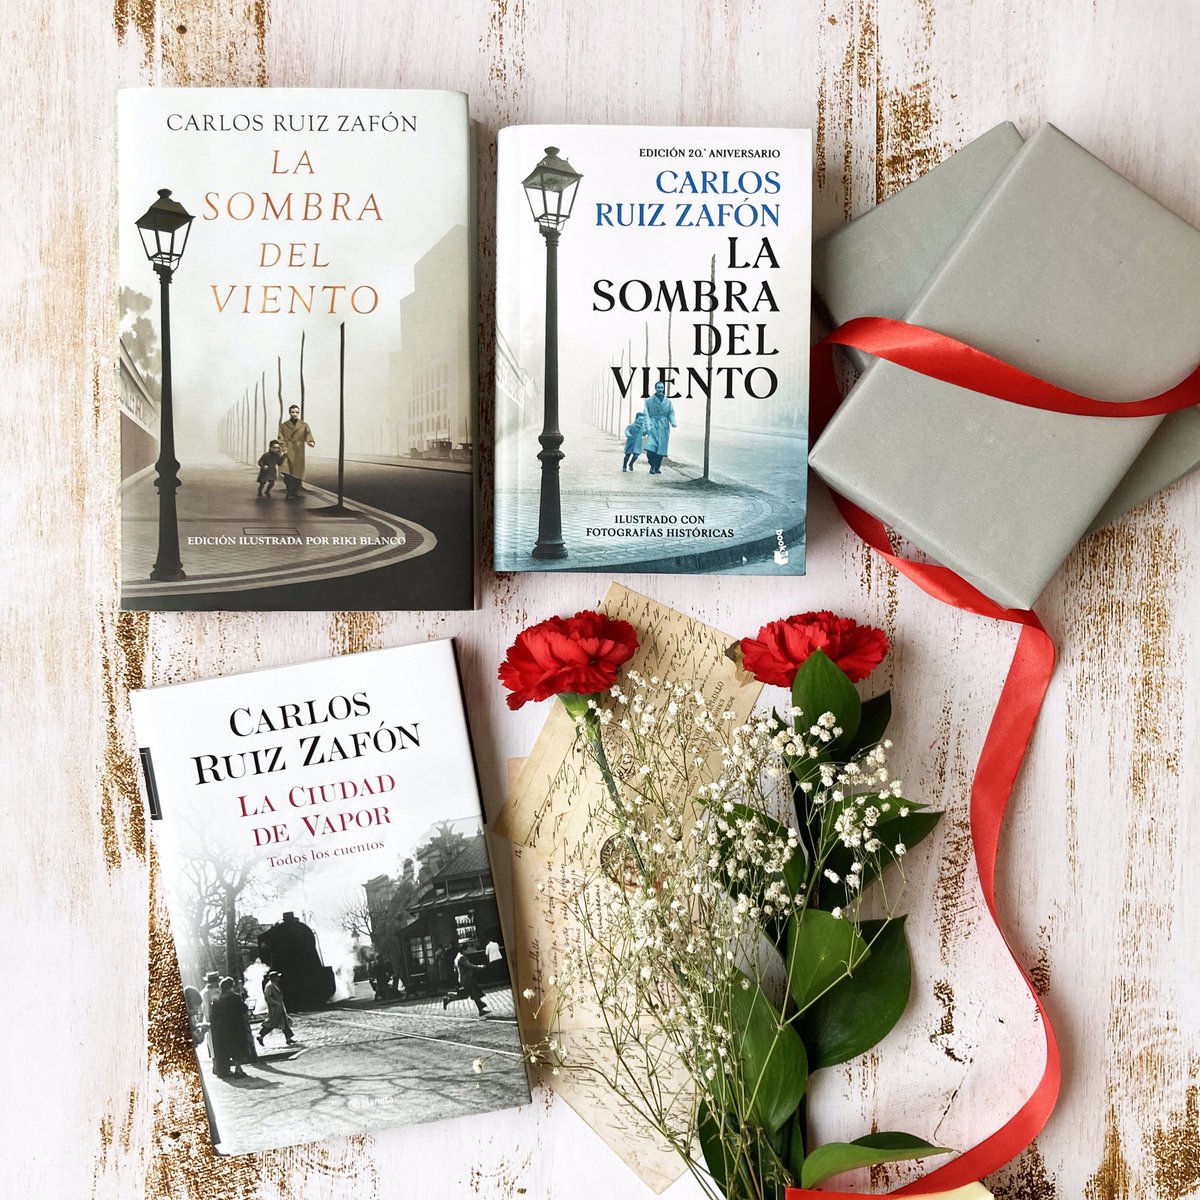 Historias inolvidables de Carlos Ruiz Zafón para regalar en el #DíaDeLaMadre. #LaSombraDelViento #LaCiudadDeVapor #CarlosRuizZafon